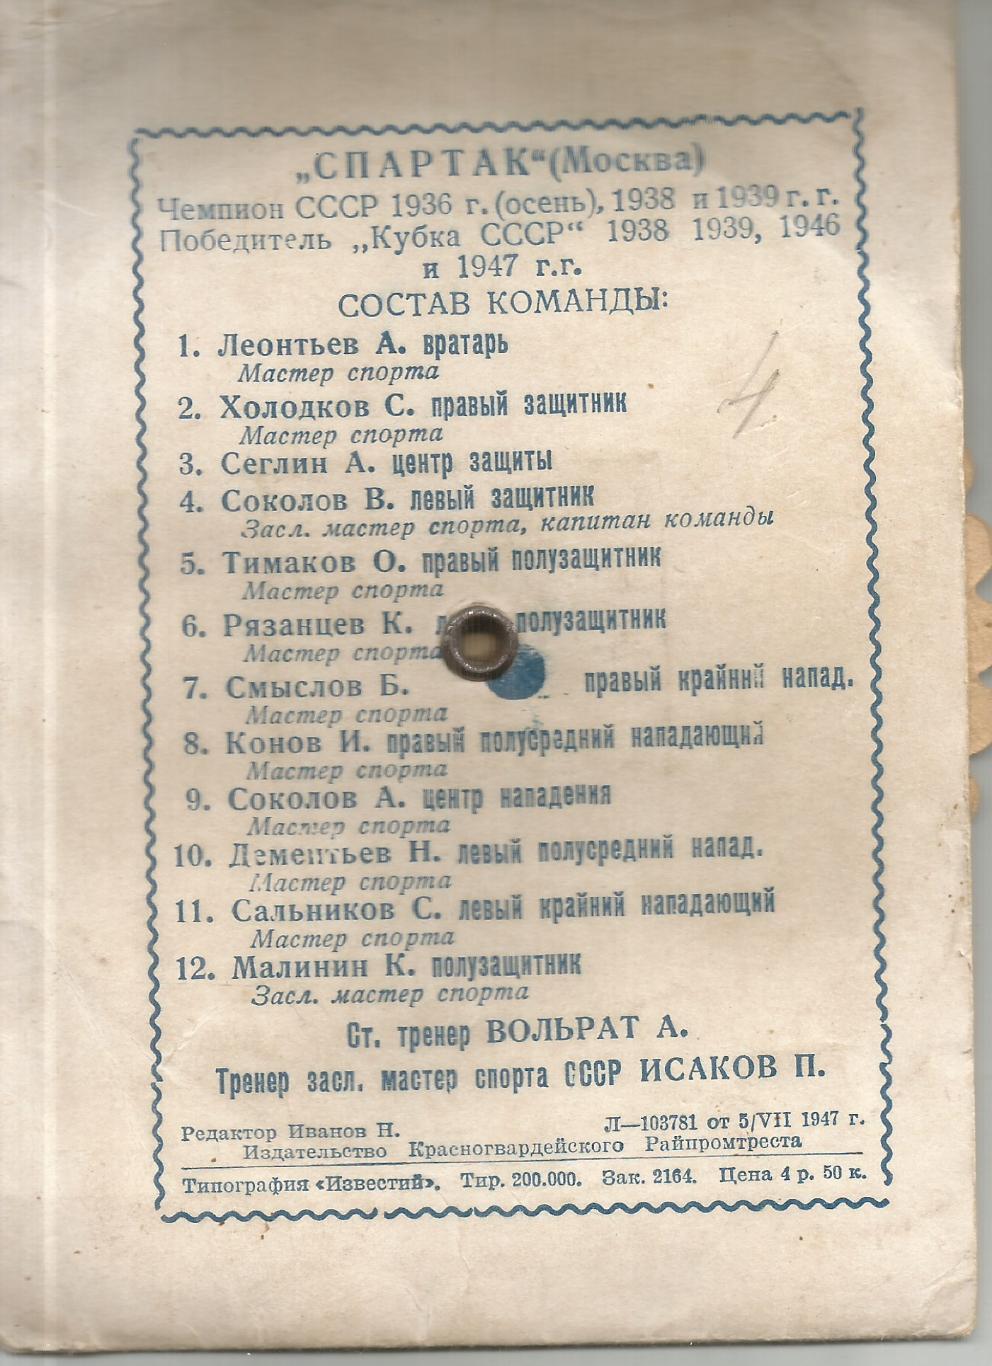 1947 РАРИТЕТ спартак Москва Фото-сувенир 1